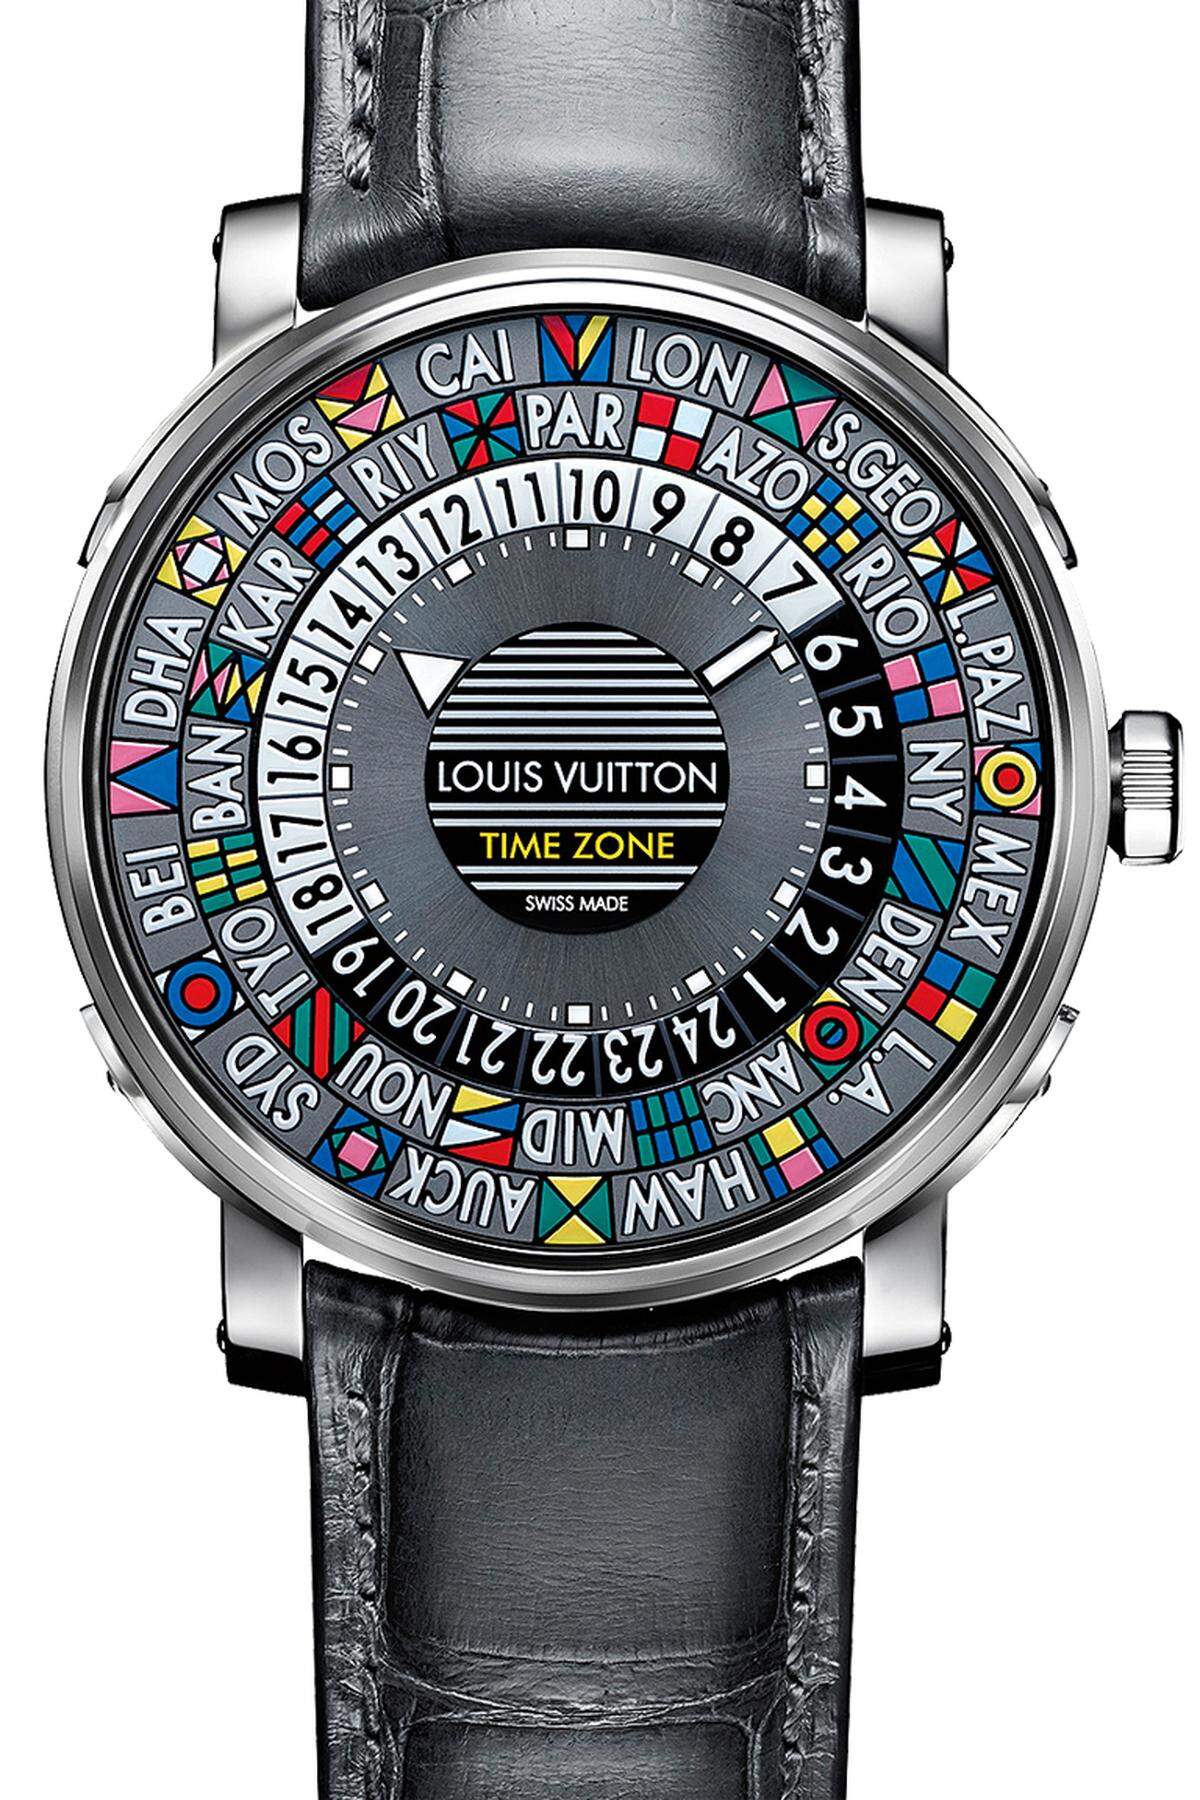 Die etwas andere Uhr mit Anzeigemöglichkeit der Zonenzeiten in den 24 wichtigsten Zeitzonen.